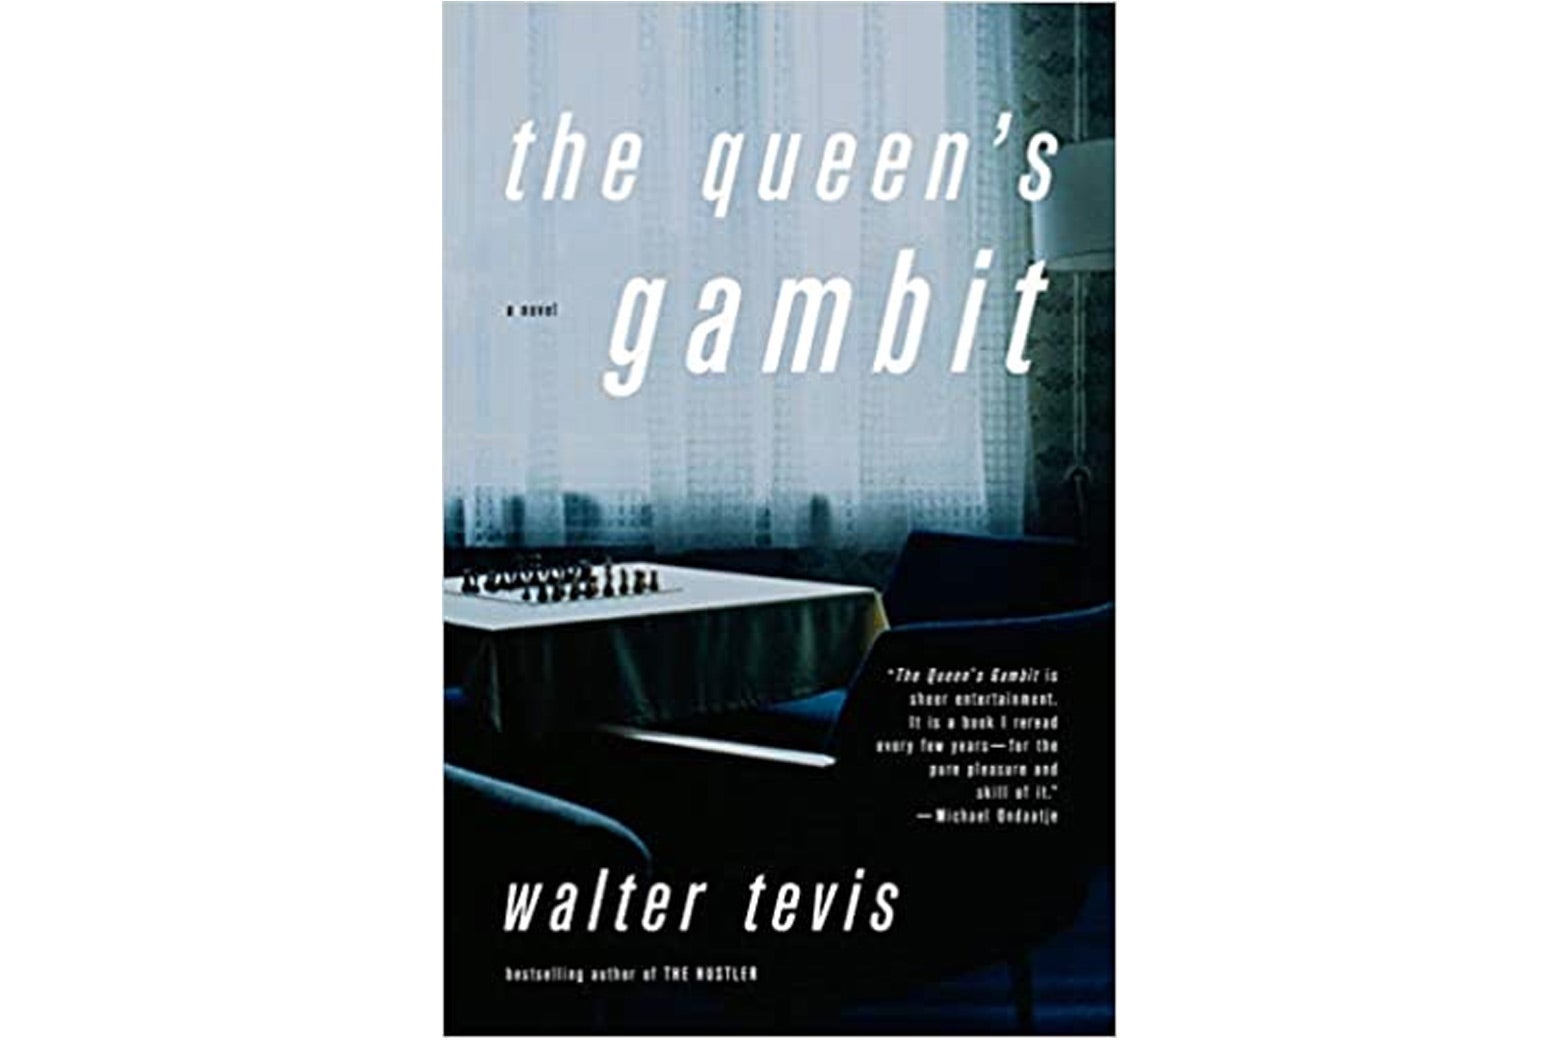 The Queen's Gambit book jacket